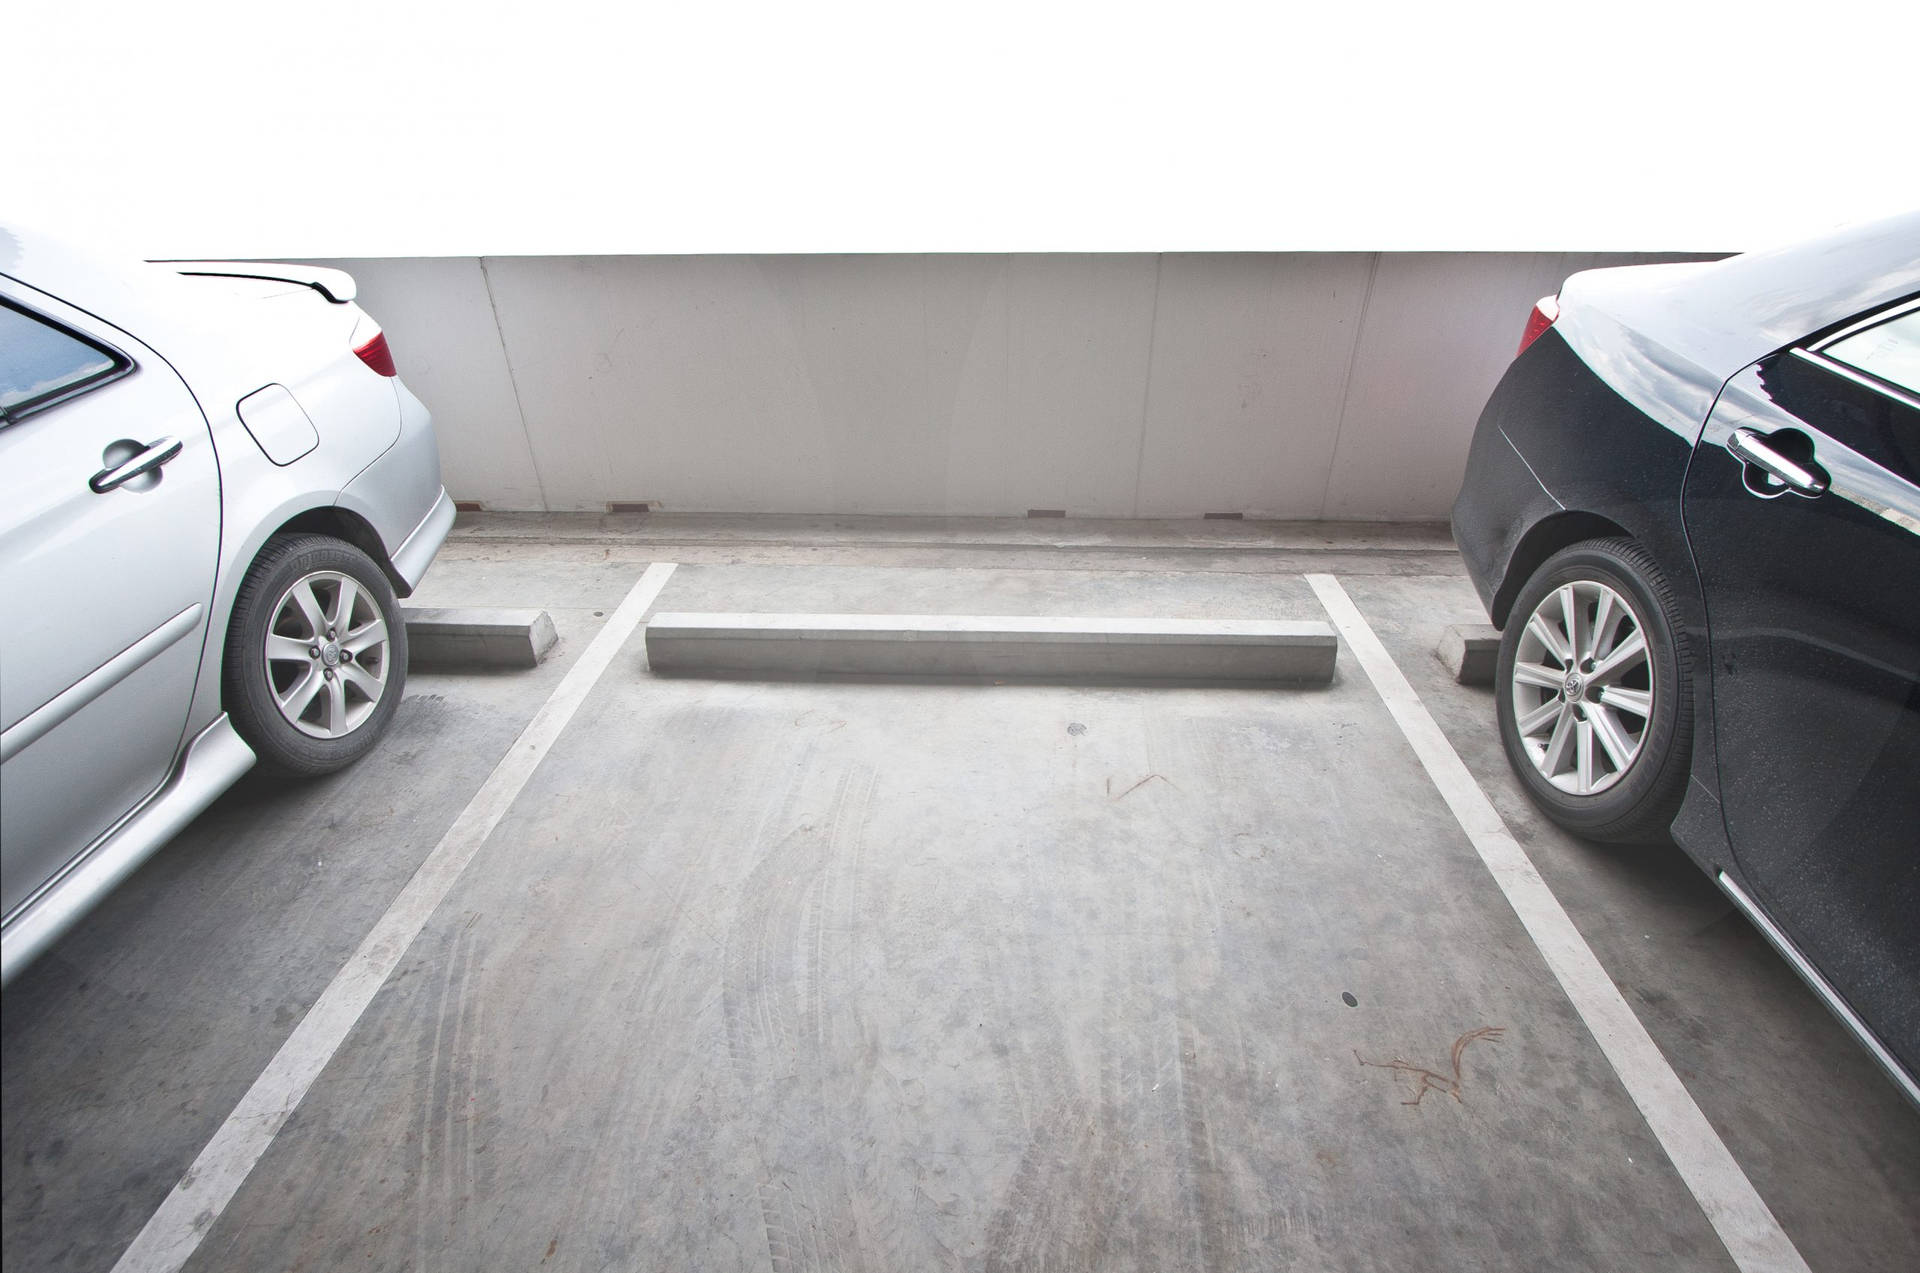 Tilgængelig parkeringsplads mellem to biler Wallpaper